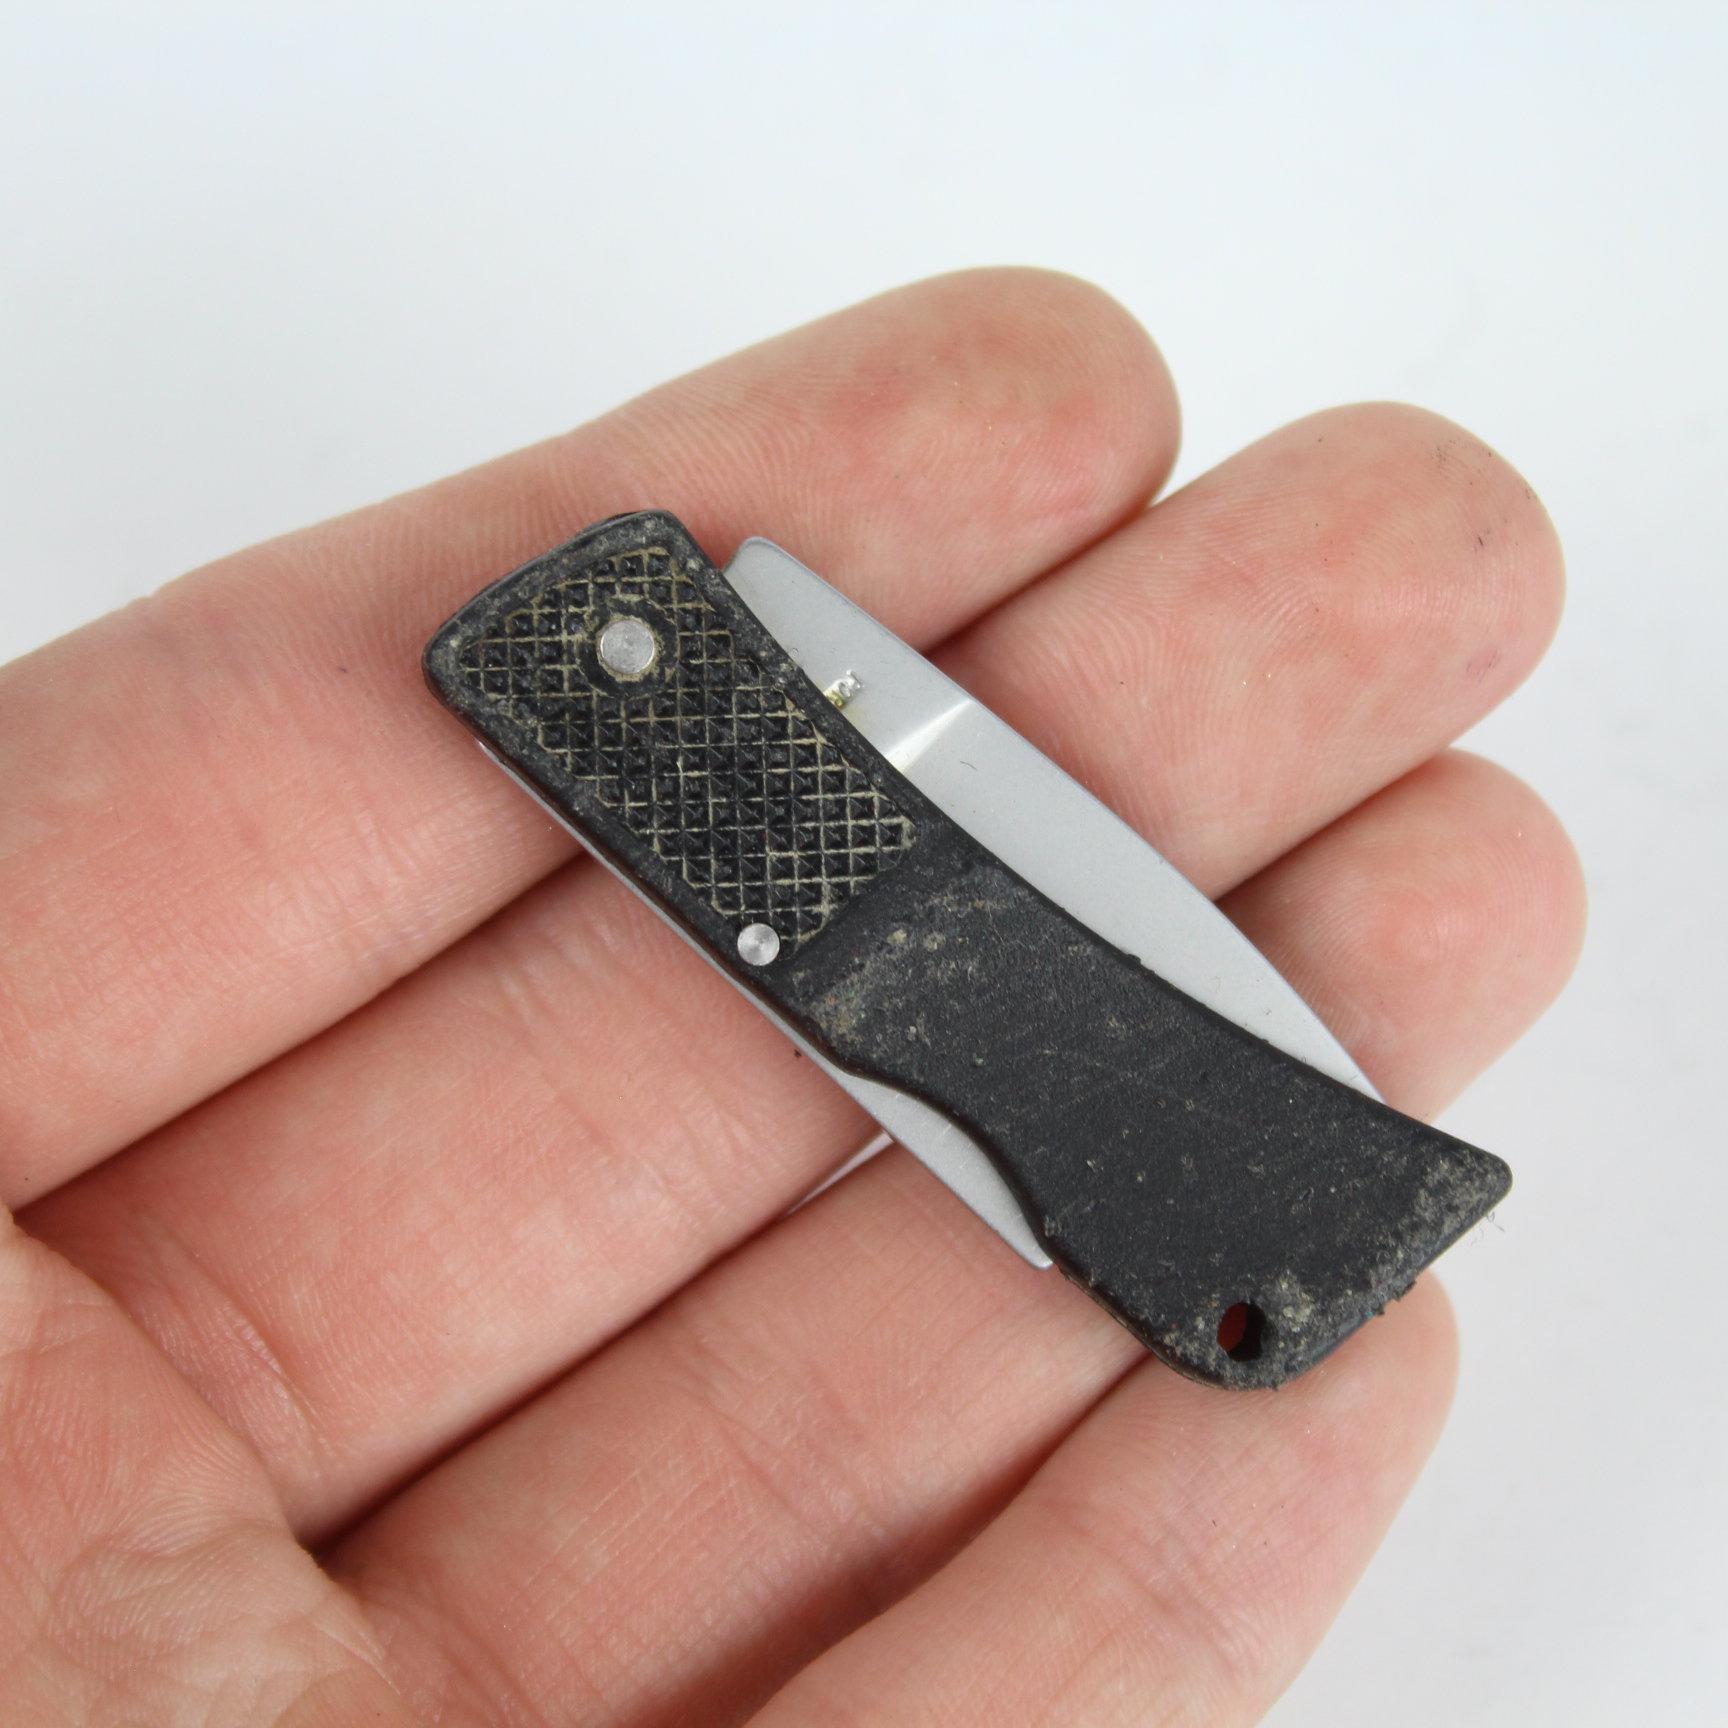 Vintage Pocket Knife Lot